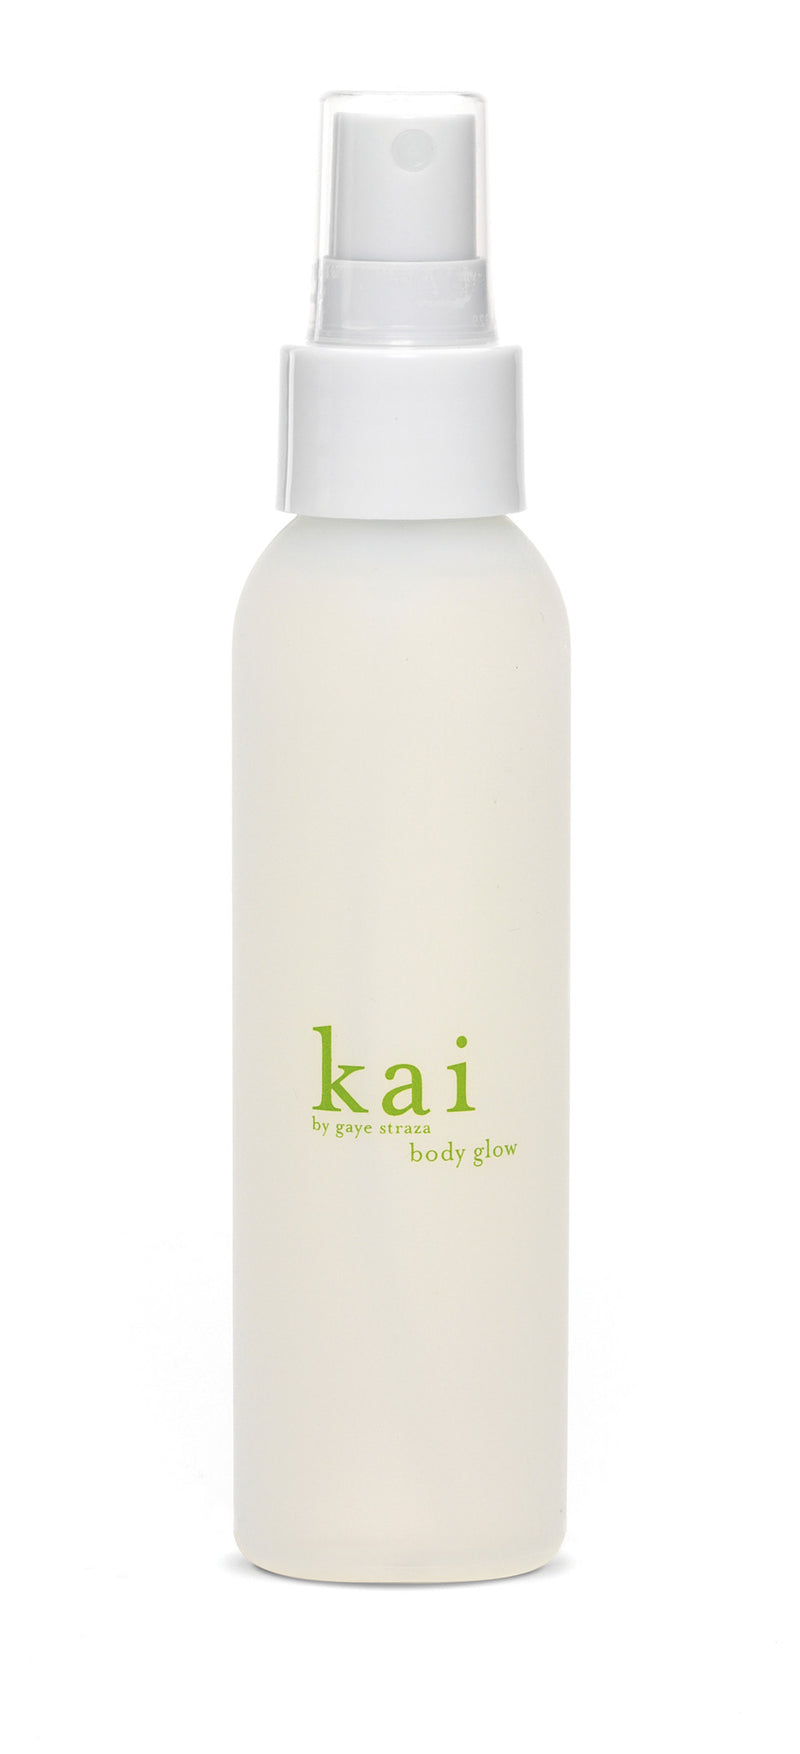 media image for kai body glow design by kai fragrance 1 282